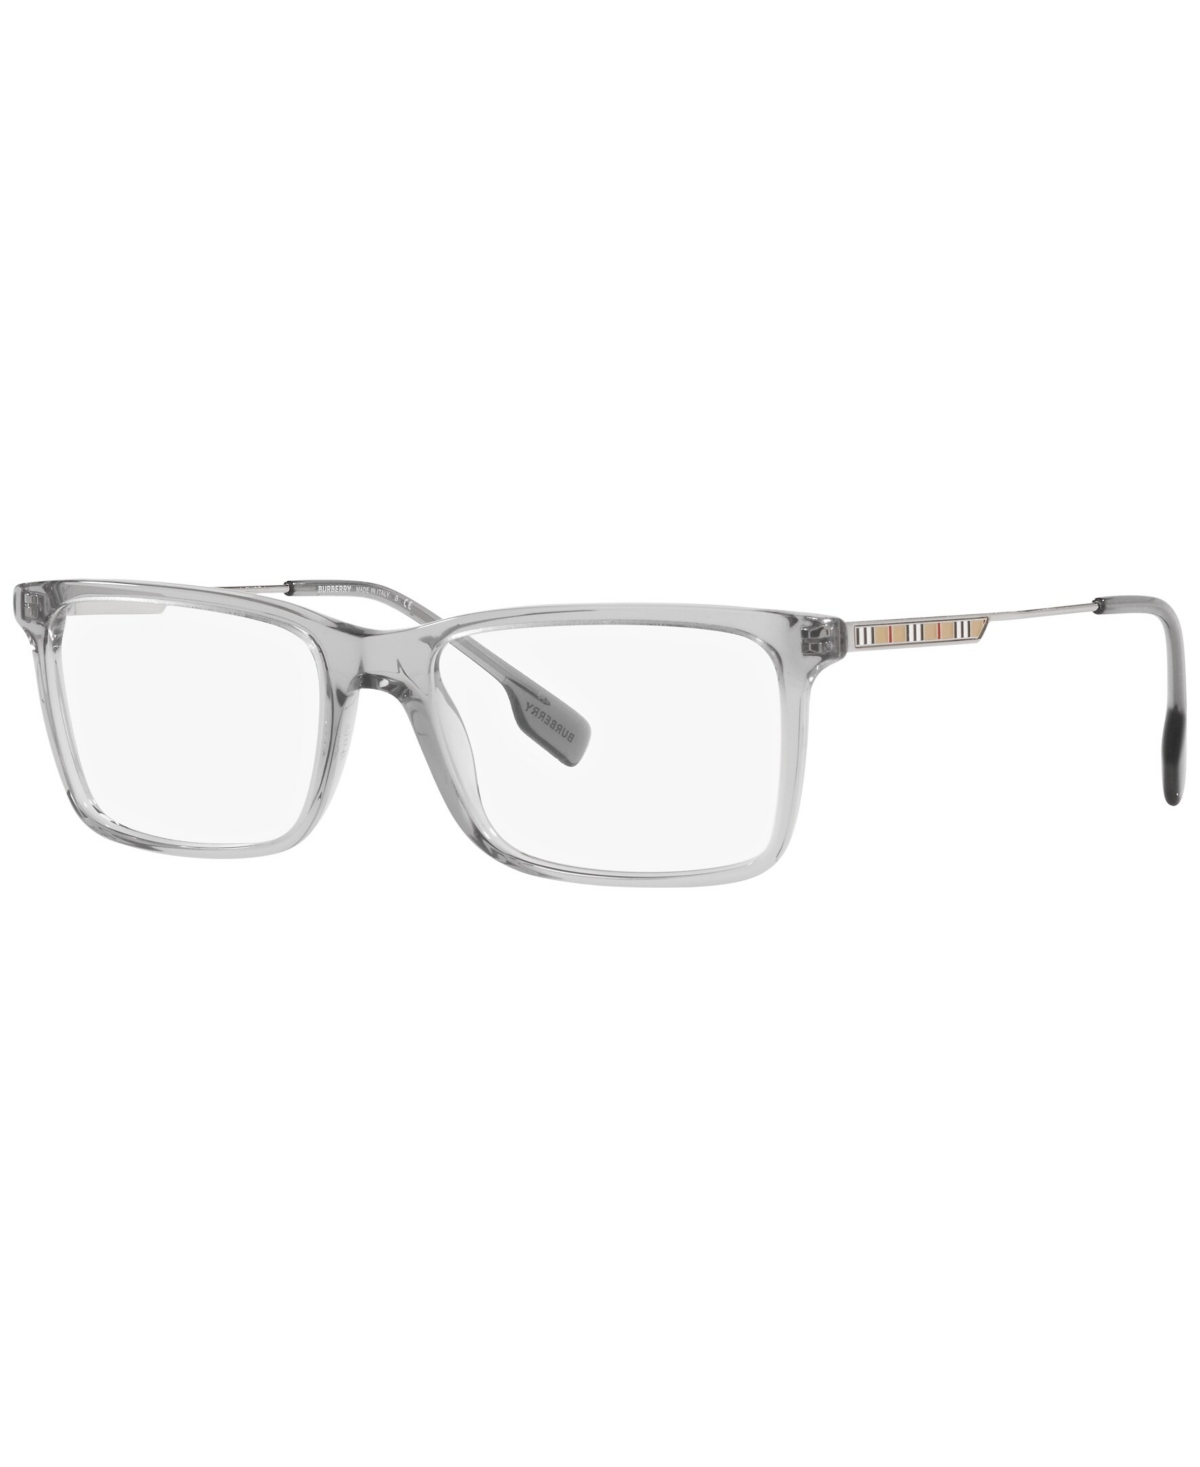 BE2339 Men's Rectangle Eyeglasses - Gray